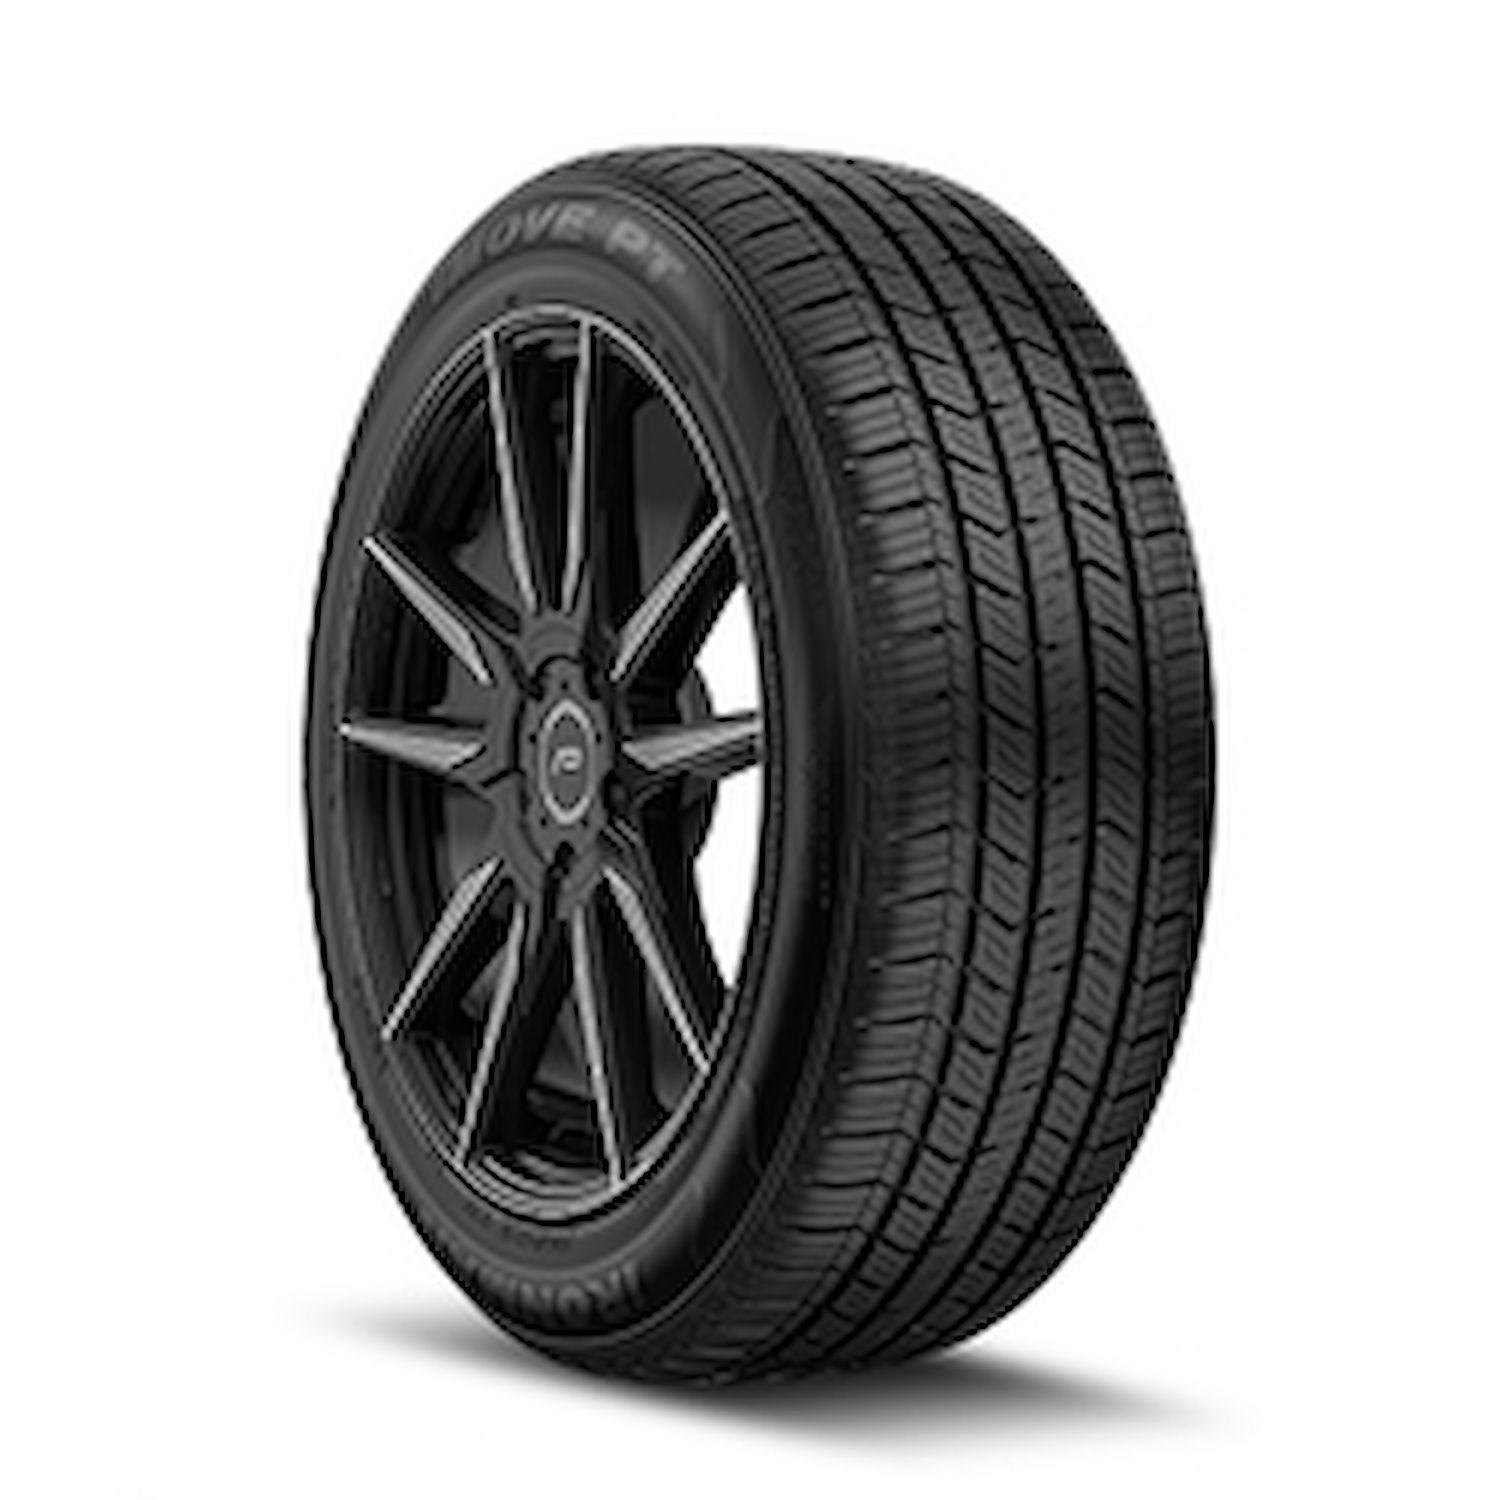 98443.1 iMOVE PT Tire, 175/70R14, 84T